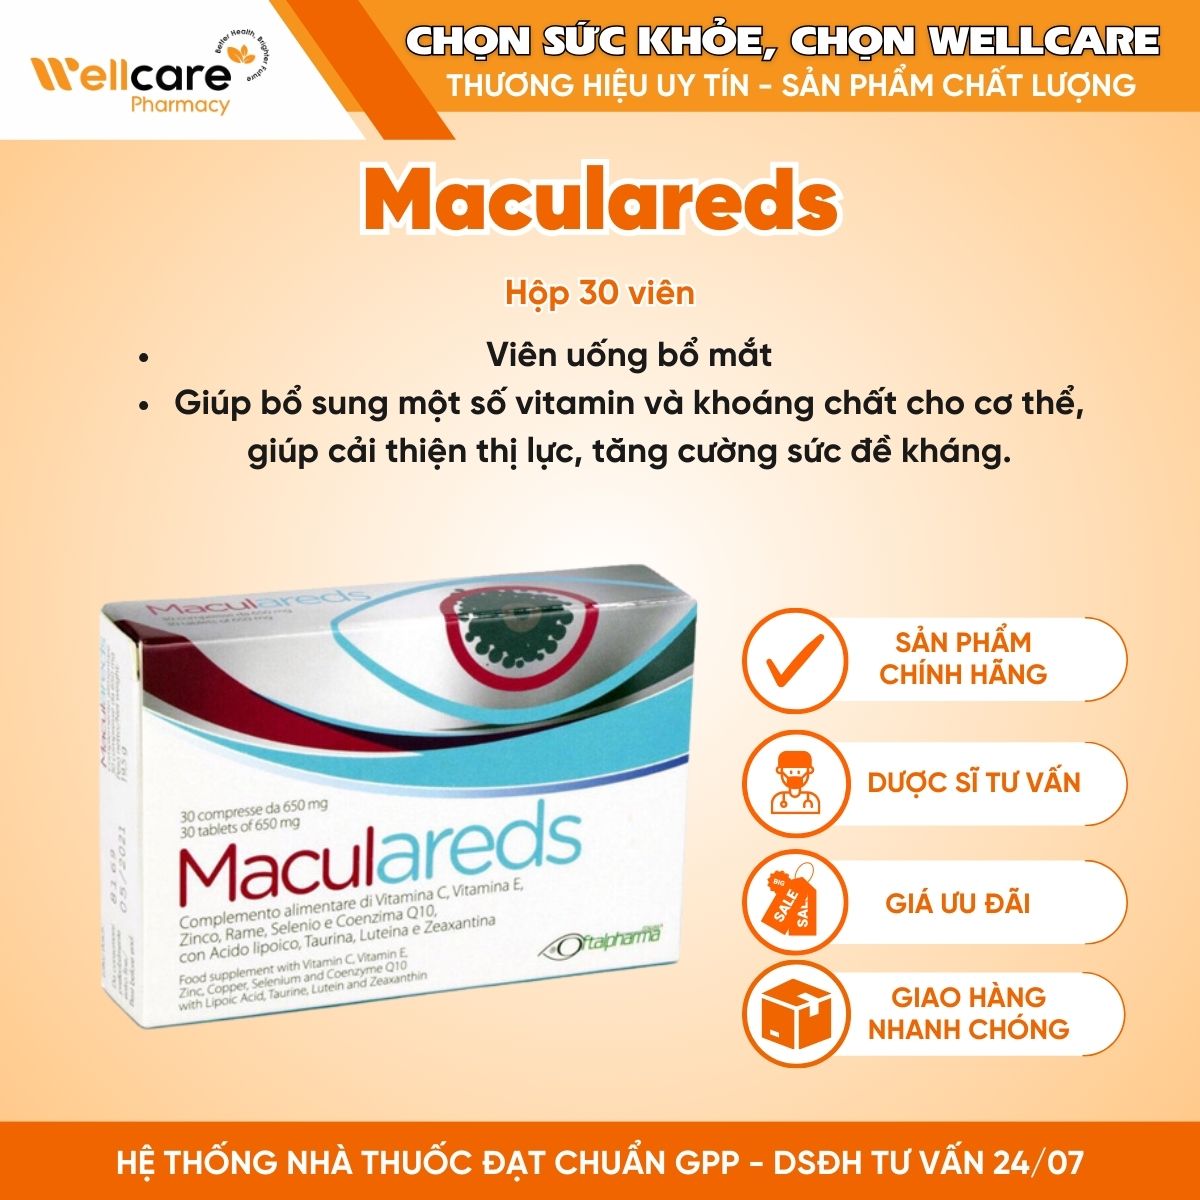 Maculareds – Viên uống bổ mắt (Hộp 30 viên)